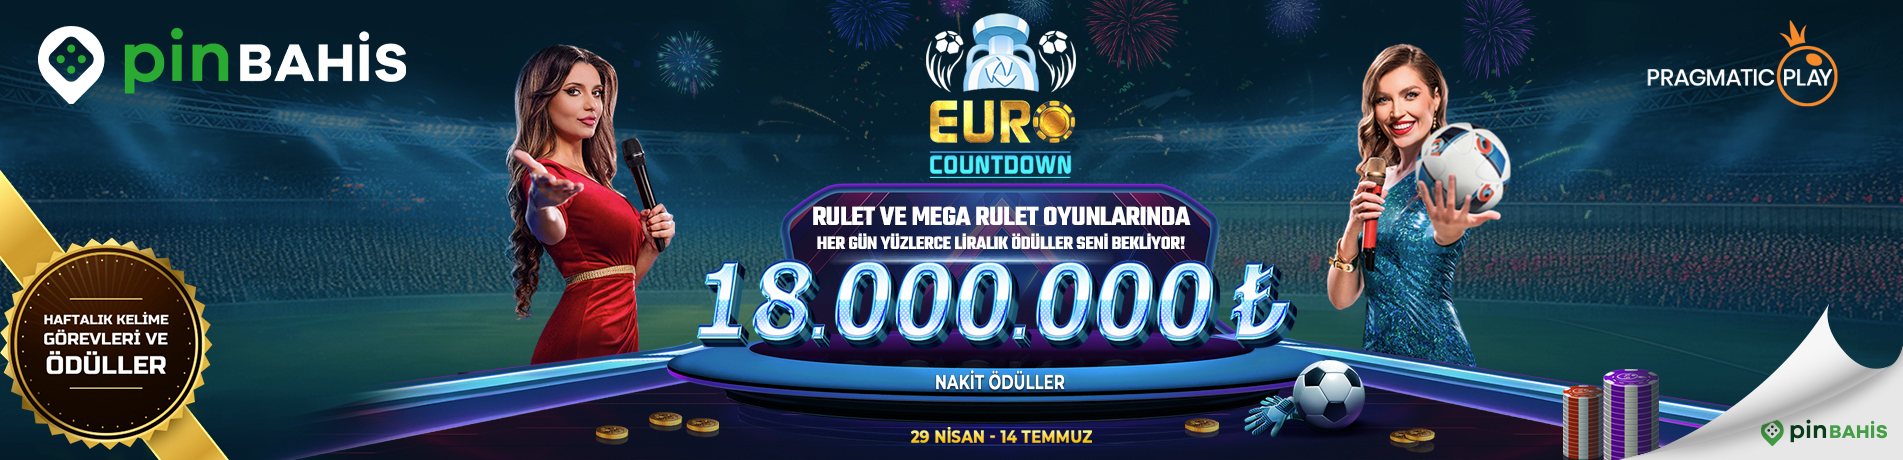 Euro Countdown